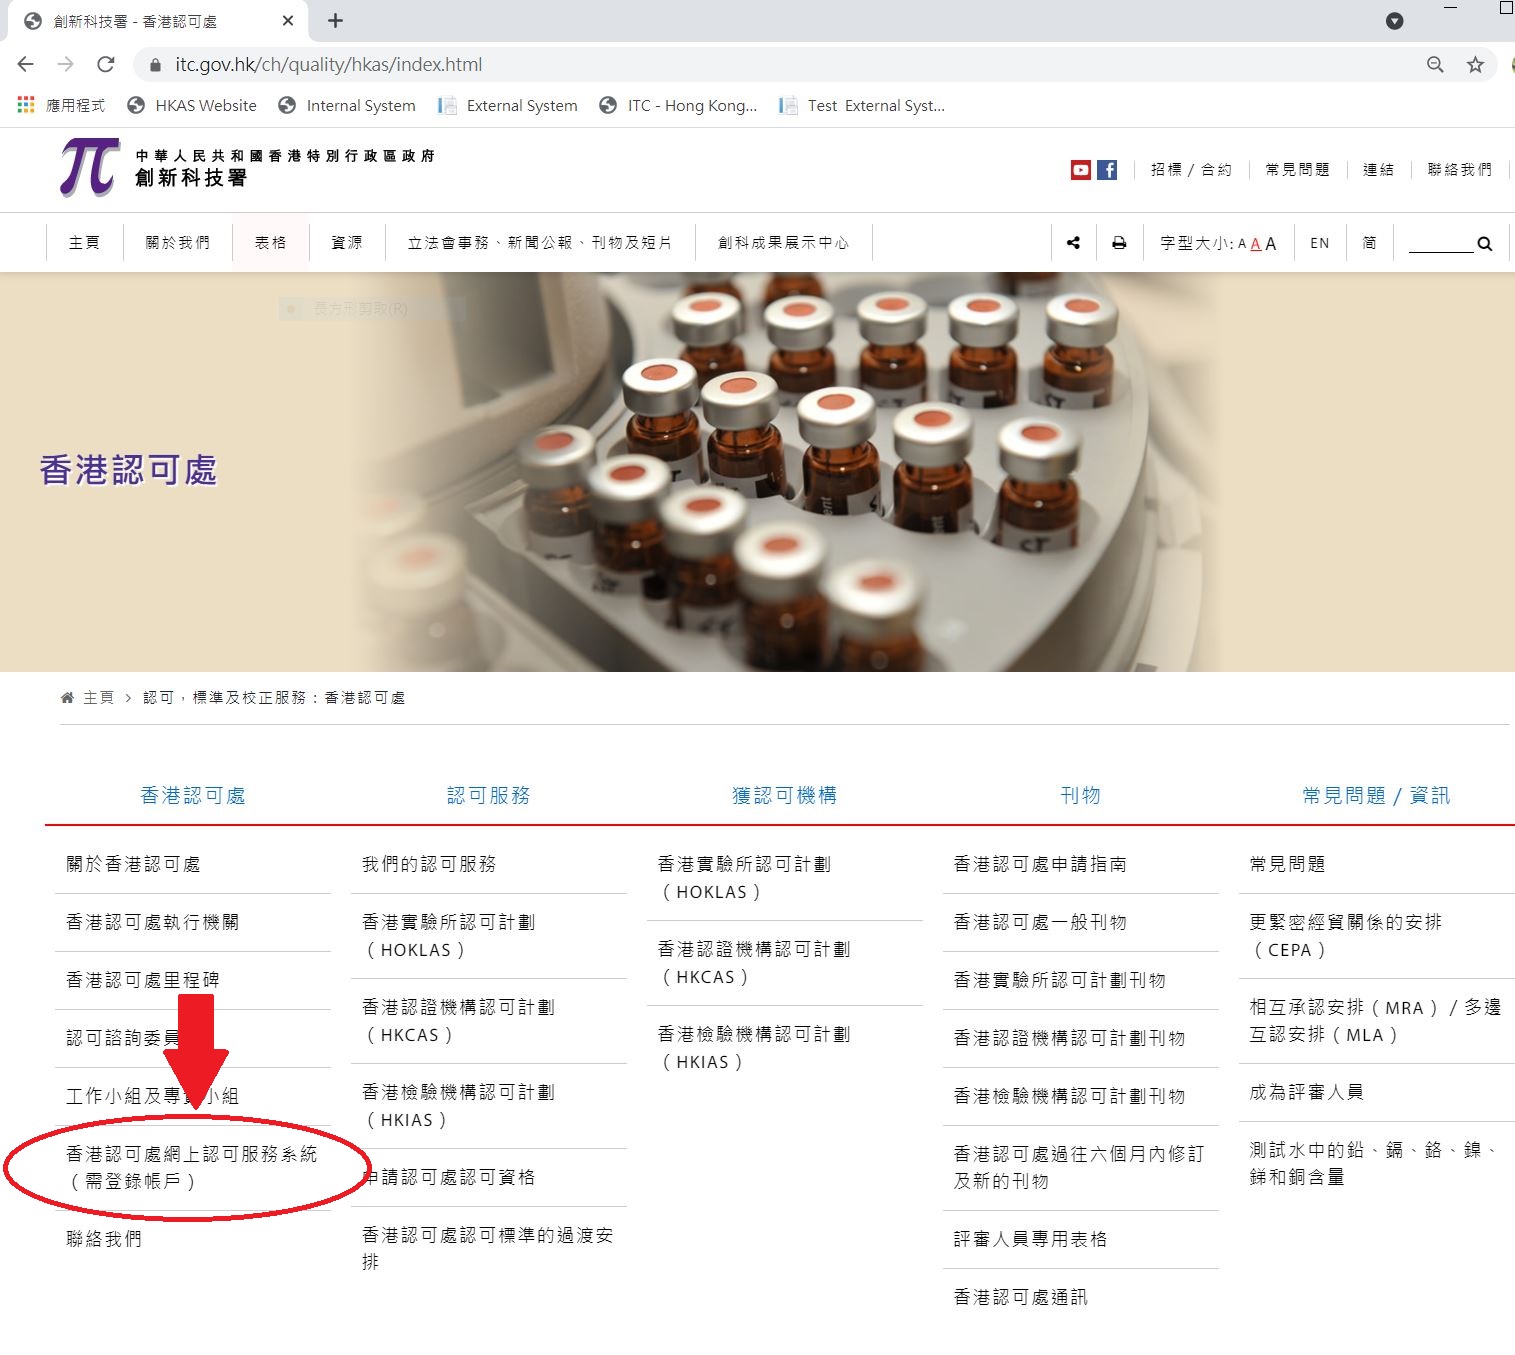 香港認可處網站上的鏈接的位置